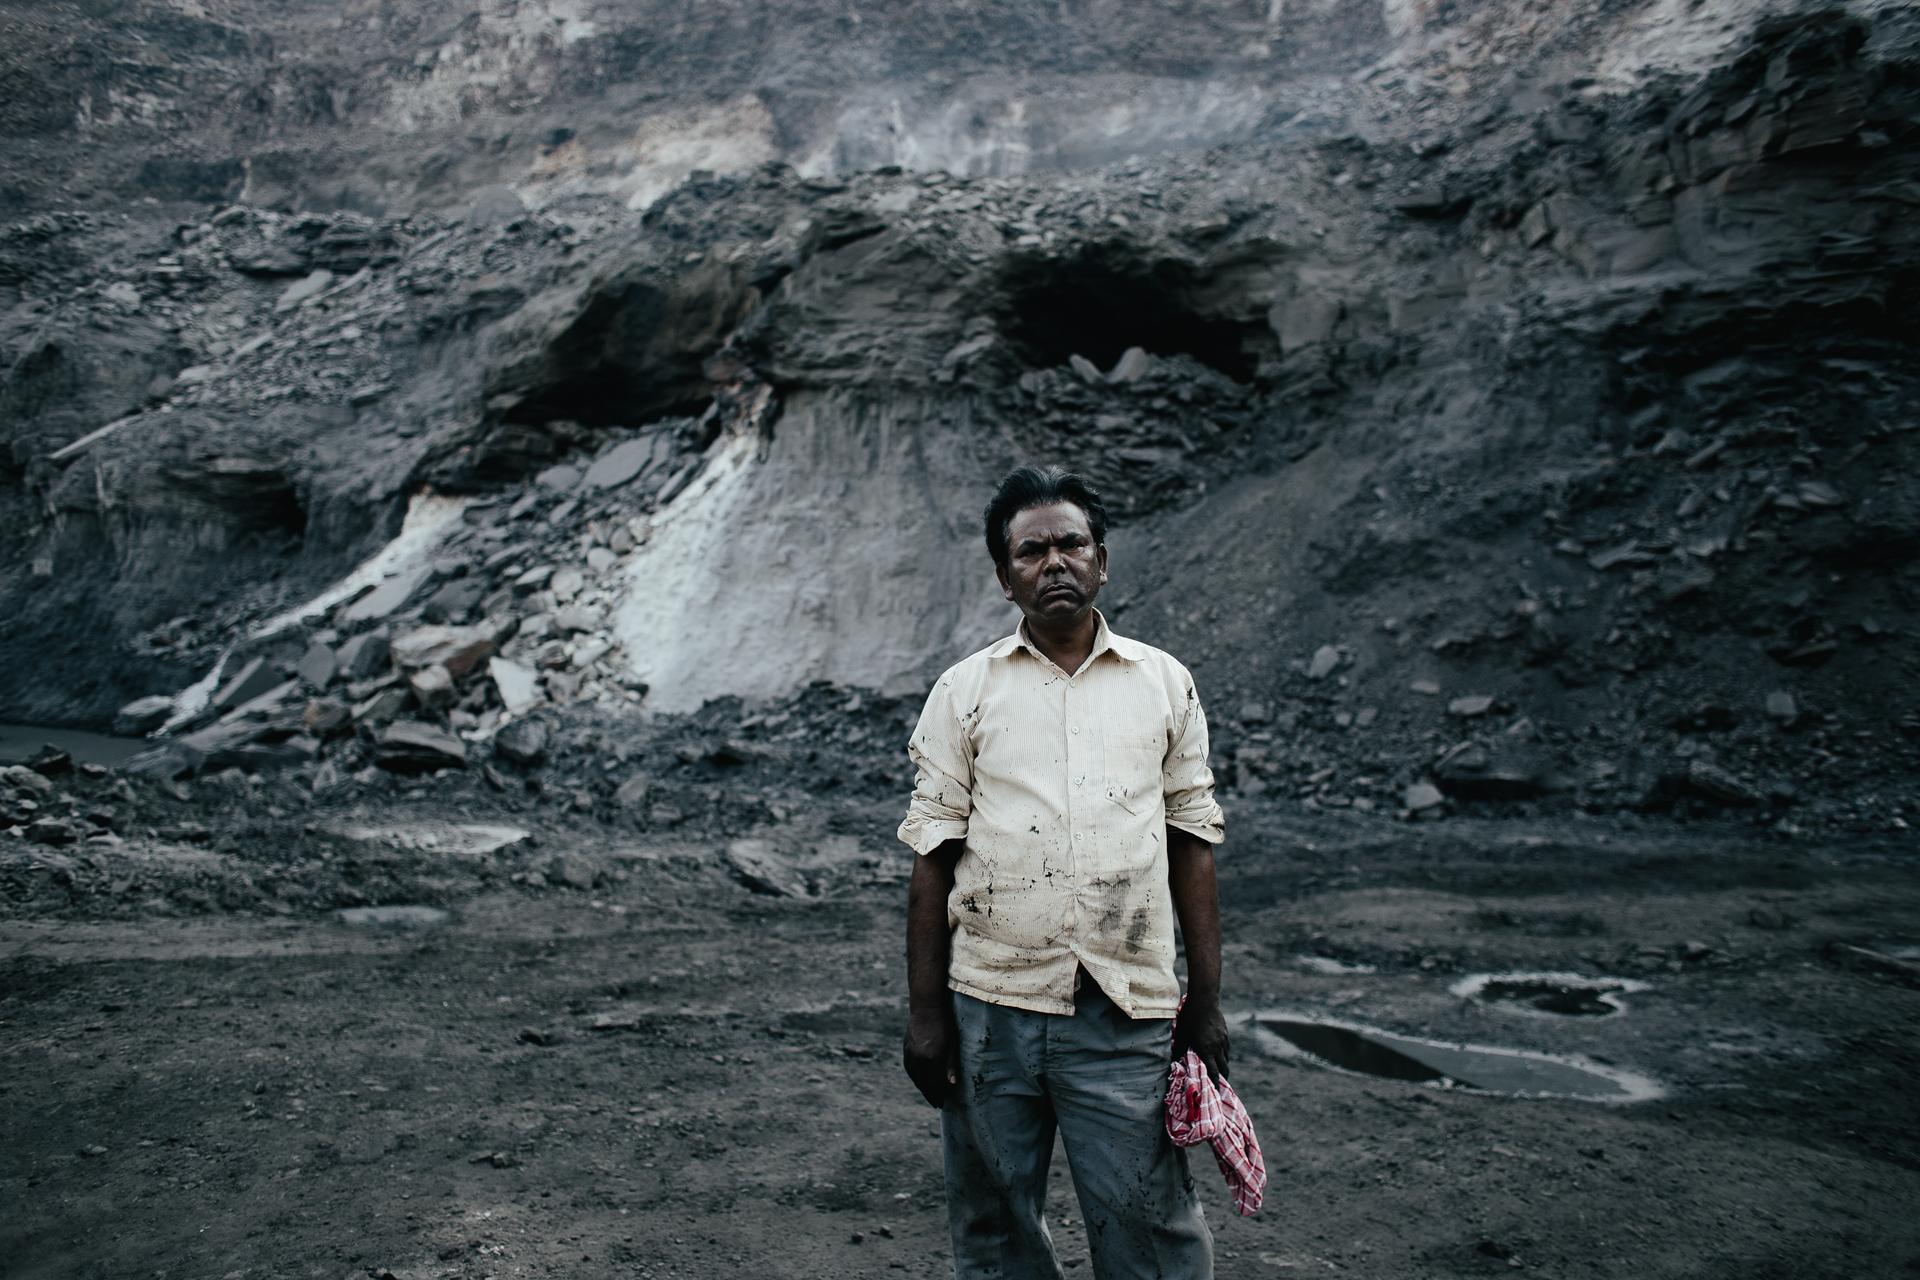 Coal miner in Jhaira, India